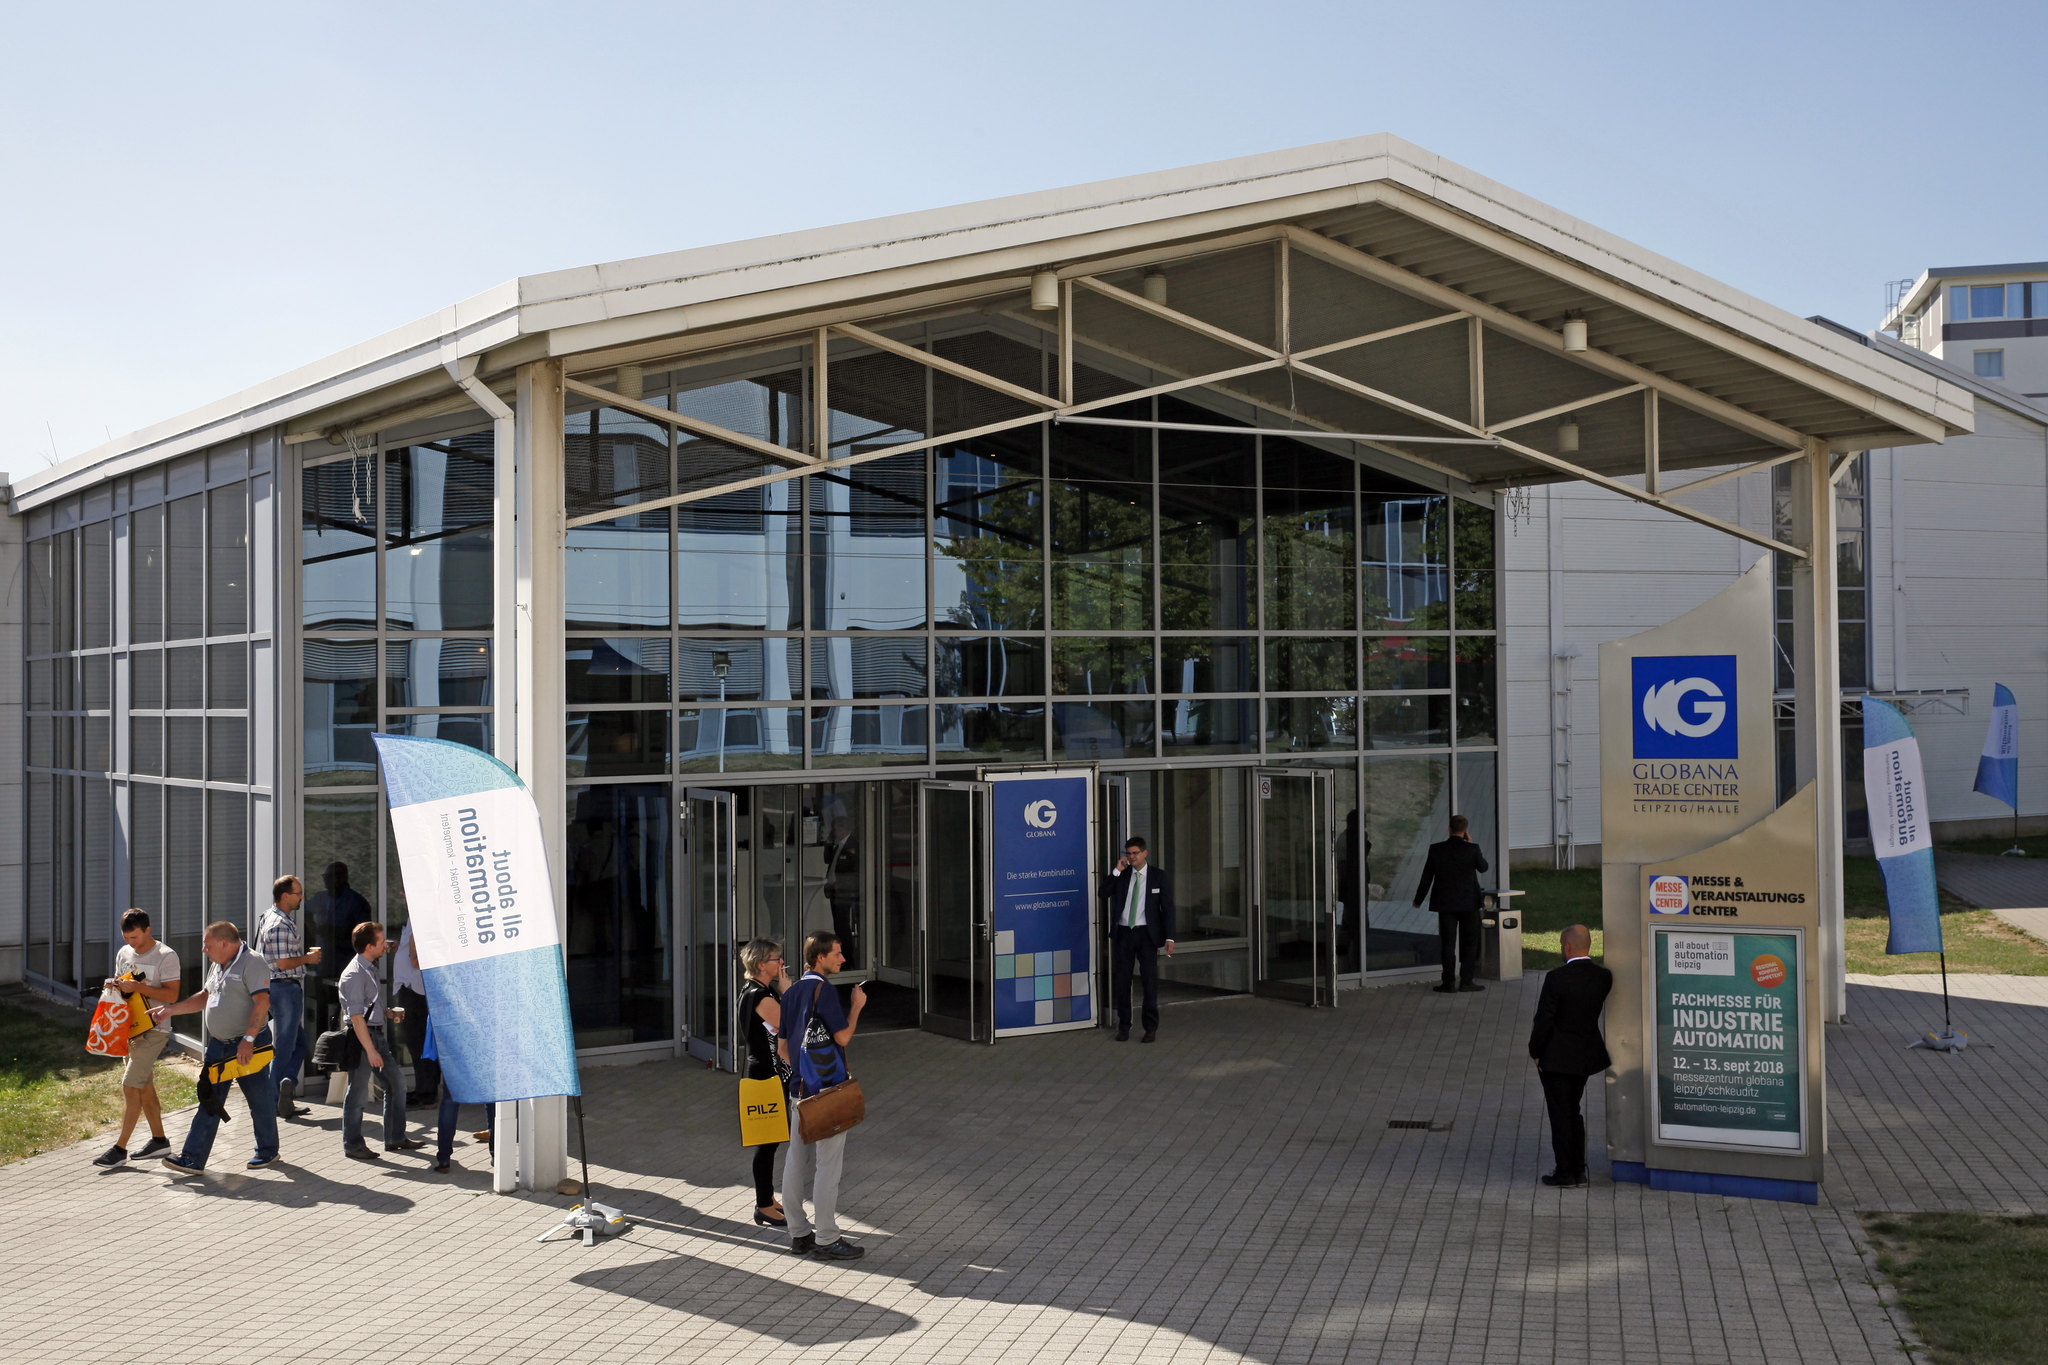  Die All About Automation findet am 11. und 12. September 2019 im Globana Trade Center, Schkeuditz, Leipzig, statt. (Bild: untitled exhibitions GmbH)